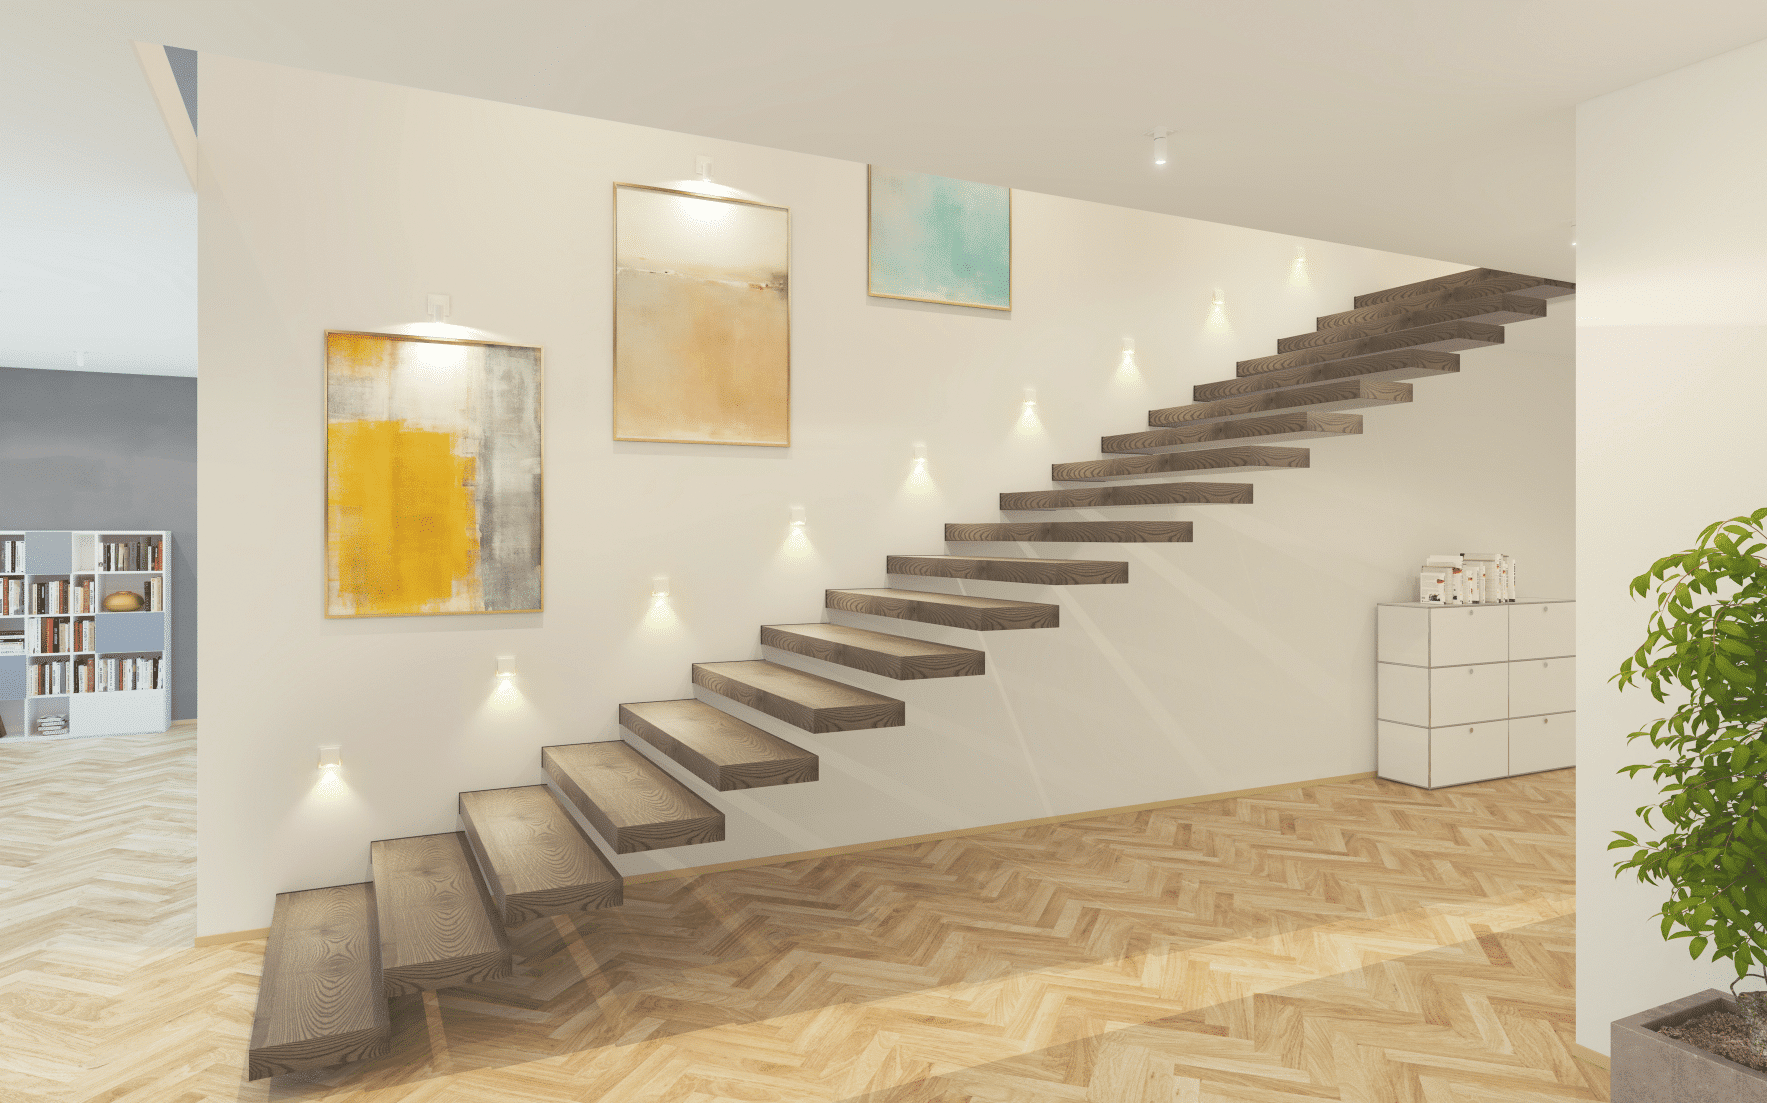 Moderne, schwebende Holztreppen mit direkter Treppen-Beleuchtung der Firma Gira, in einem Wohnhaus mit Fischgret-Boden.